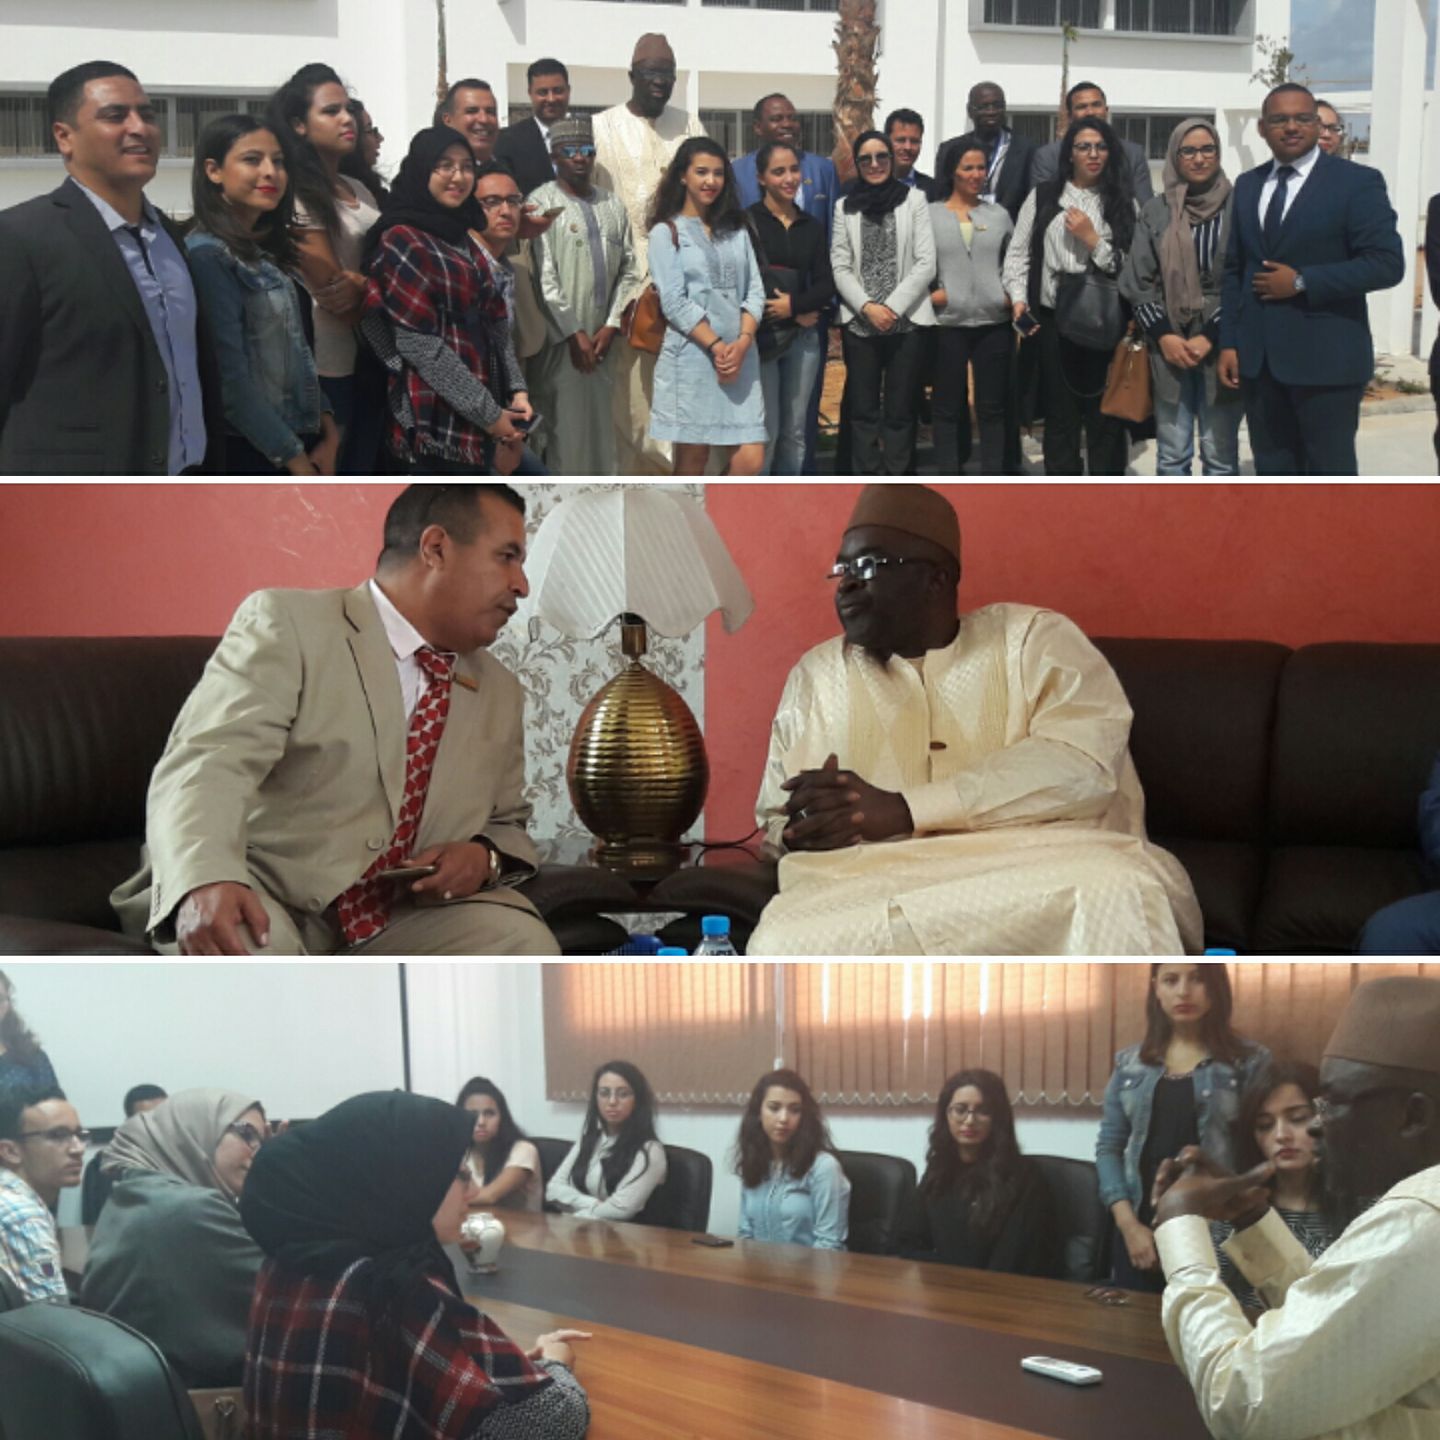 Galerie: Moustapha Cisse LO, président du parlement de la CEDEAO s'est rendu en visite de courtoisie à l'Ecole Nationale de Commerce et de Gestion de Dakhla au Maroc